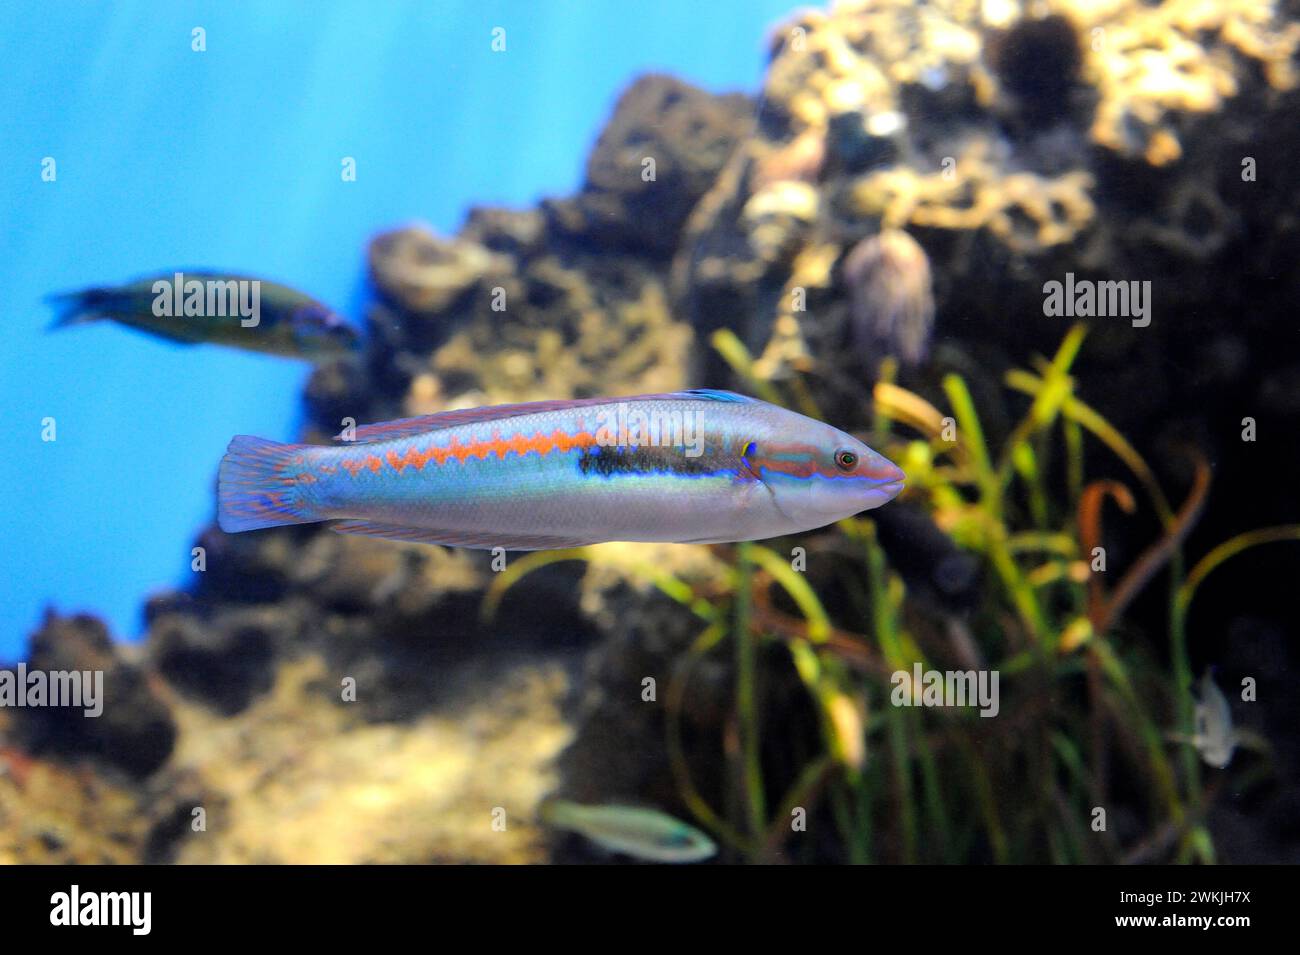 Der mediterrane Regenbogenfisch (Coris julis) ist ein fleischfressender Meeresfisch, der im Mittelmeer und im Nordostatlantik beheimatet ist. Männliche Probe. Stockfoto